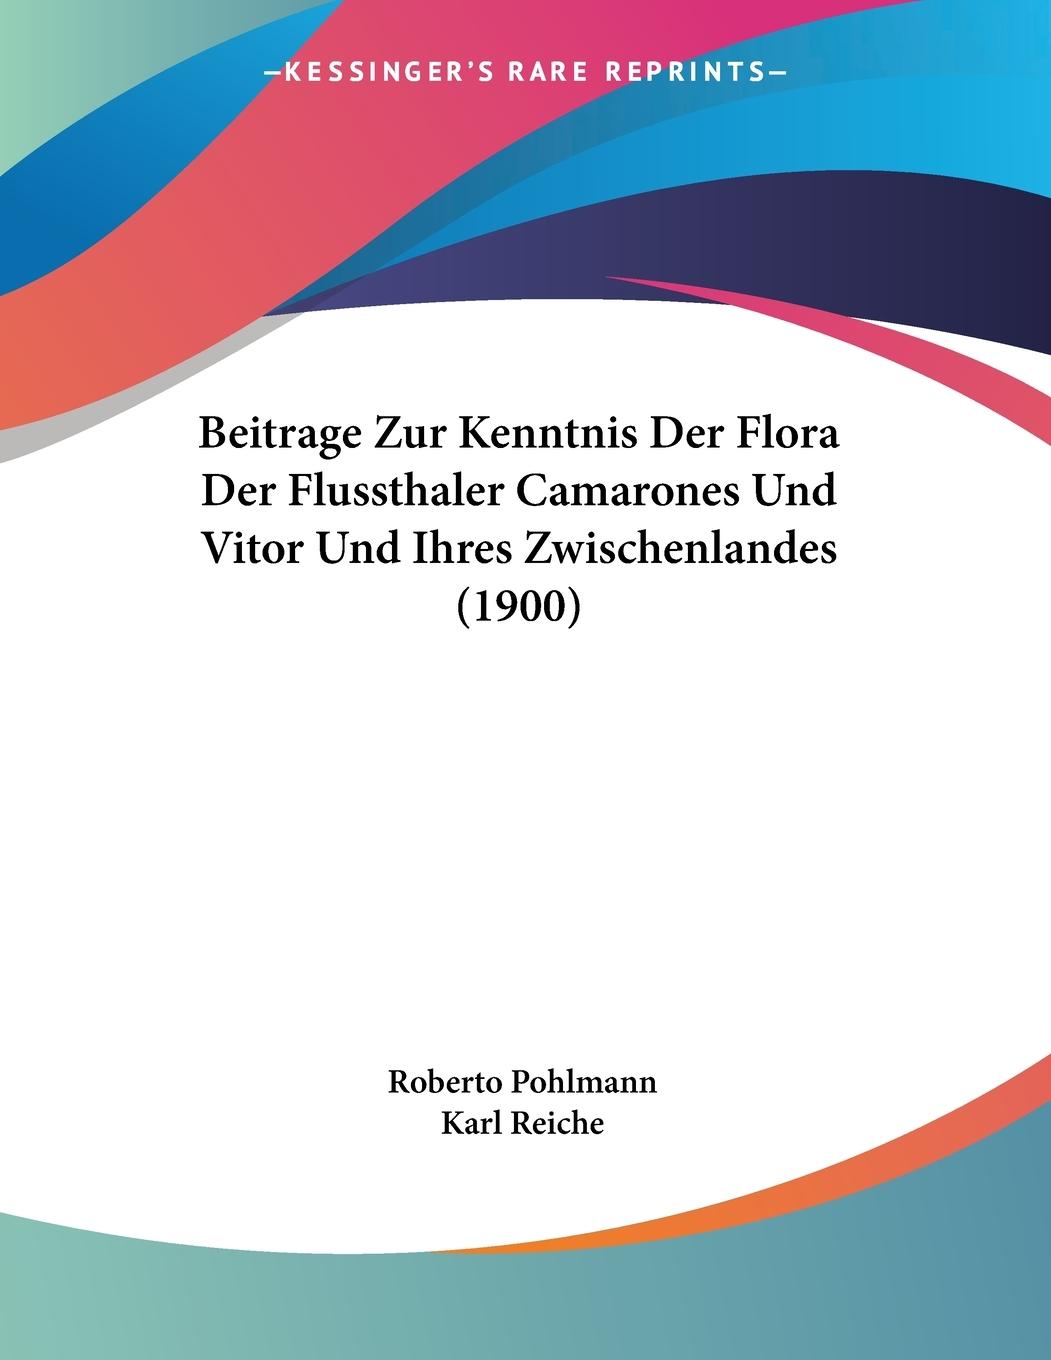 Beitrage Zur Kenntnis Der Flora Der Flussthaler Camarones Und Vitor Und Ihres Zwischenlandes (1900) - Pohlmann, Roberto Reiche, Karl